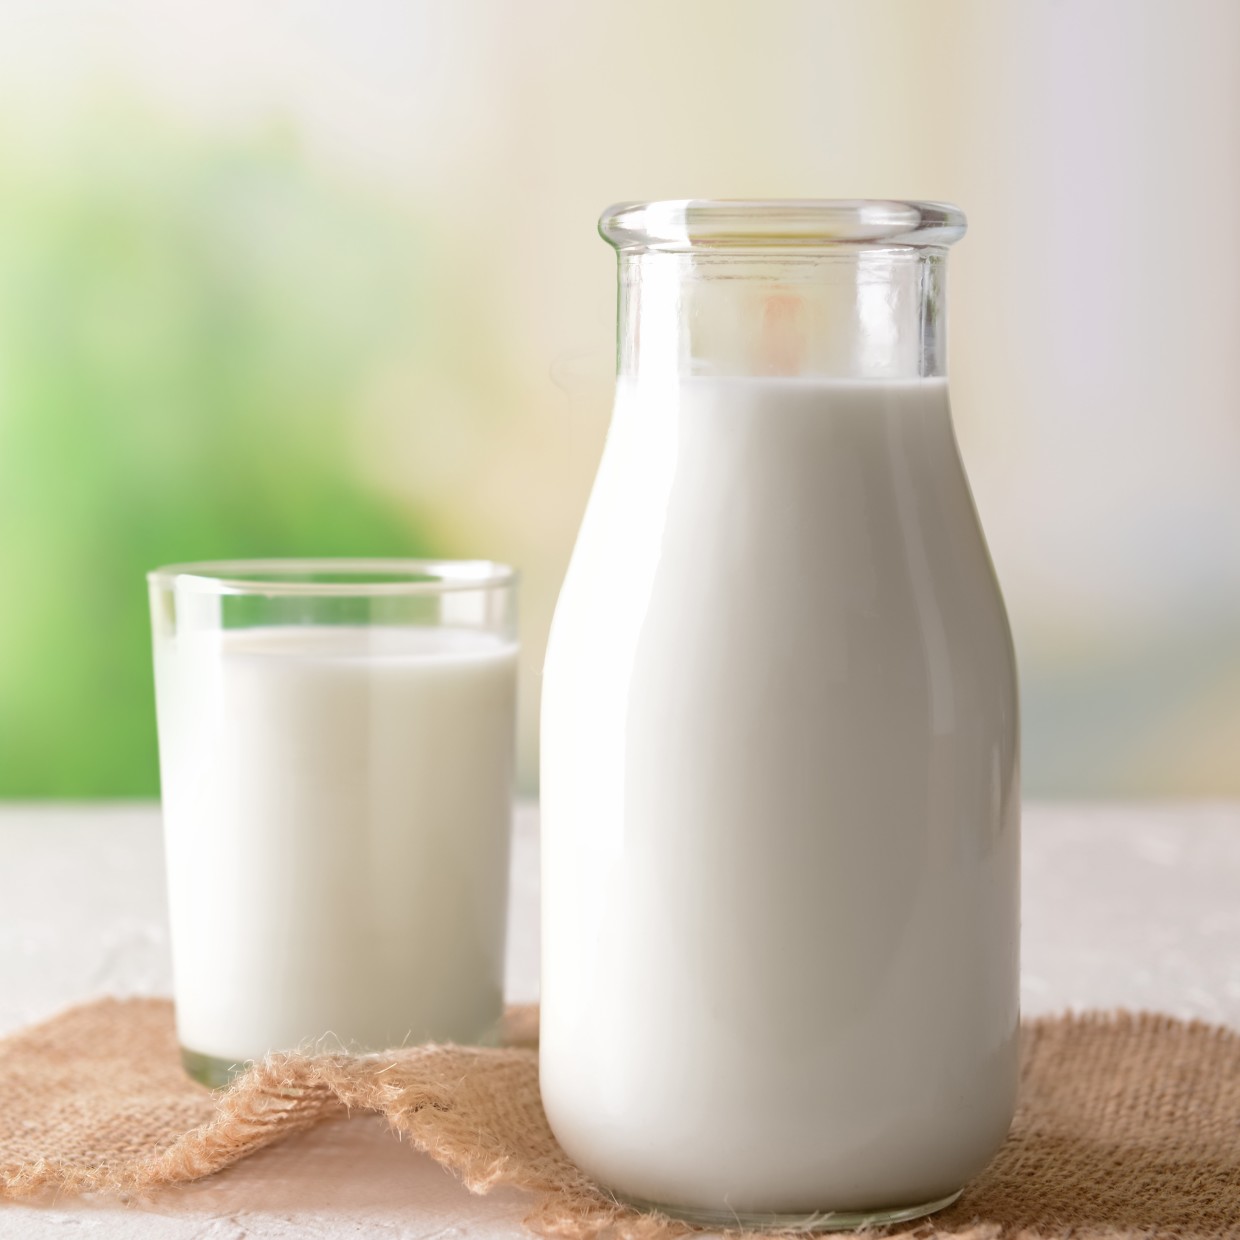  消費期限の短い「牛乳」をおいしいまま長持ちさせる方法 